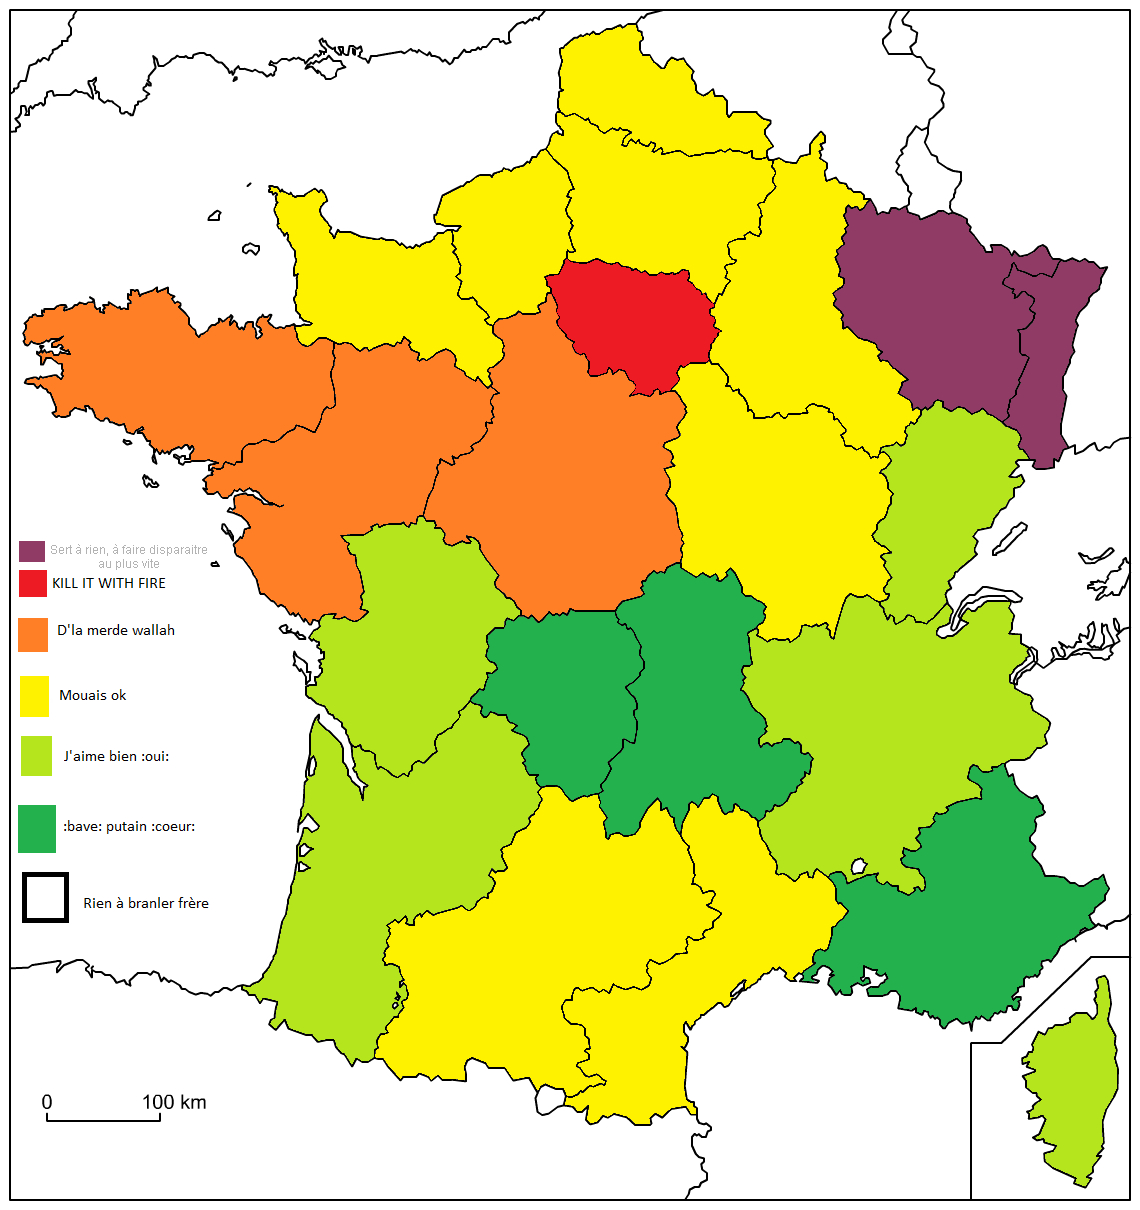 Dessin] Colorier Votre Carte De France :oui: Sur Le Forum pour Dessin Carte De France